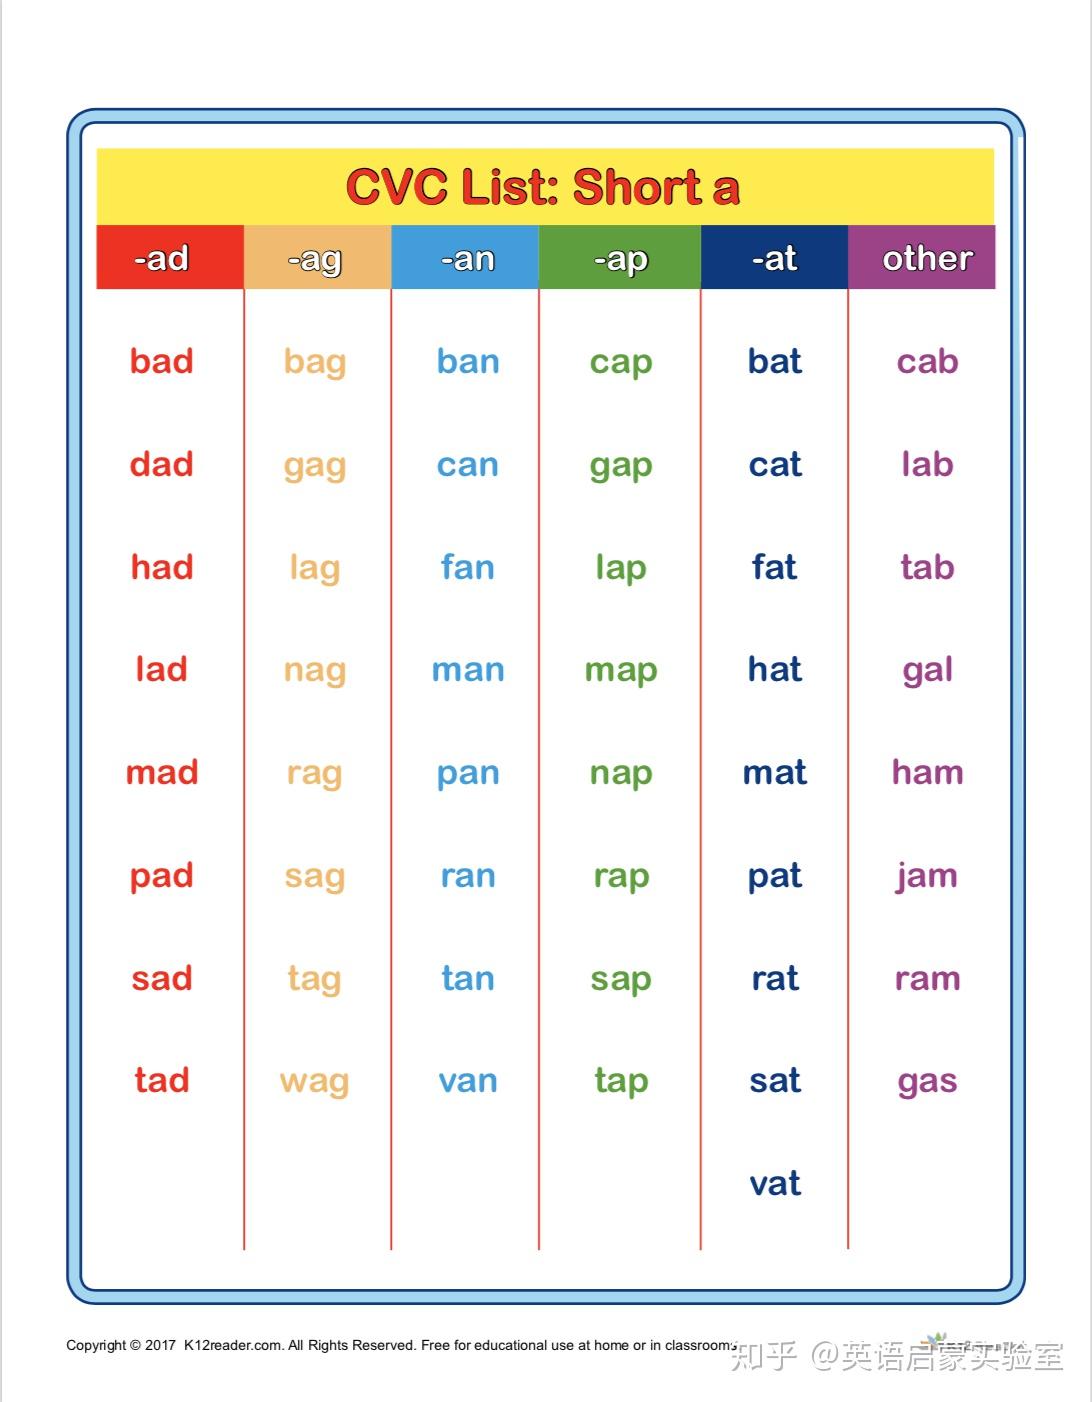 cvc单词中间必须有一个元音,即:a,e,i,o,u,也就是由这五个元音字母